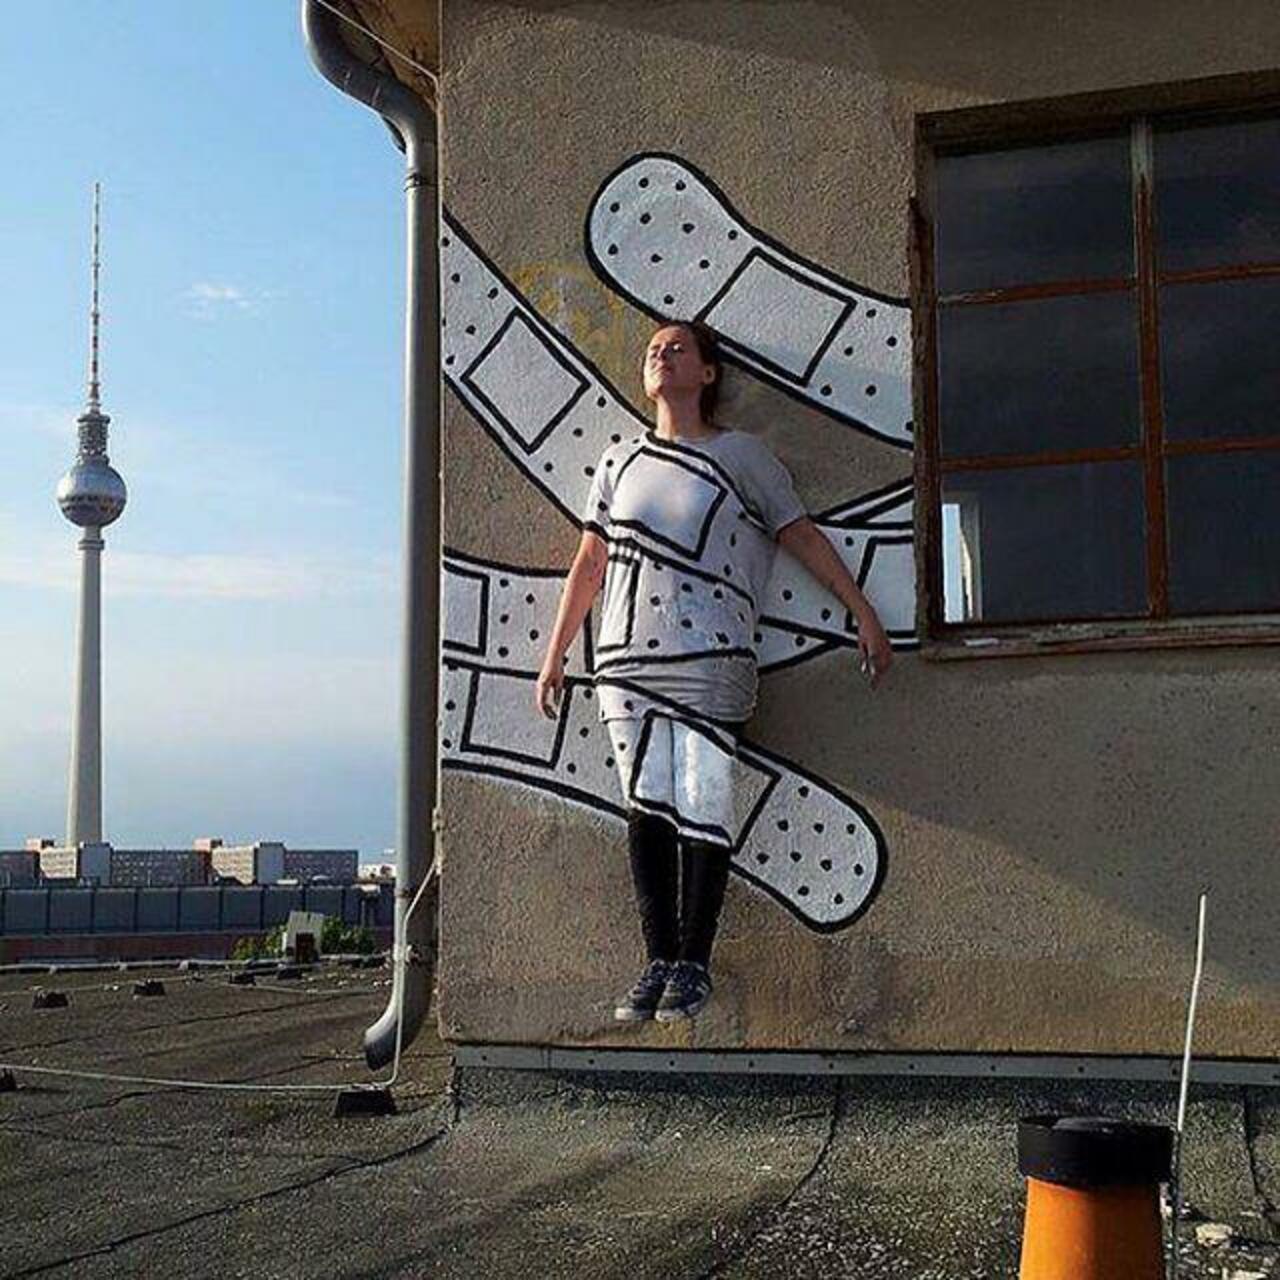 The art work by Dede in Berlin, Germany. #StreetArt #Graffiti #Mural http://t.co/HtyScirewW